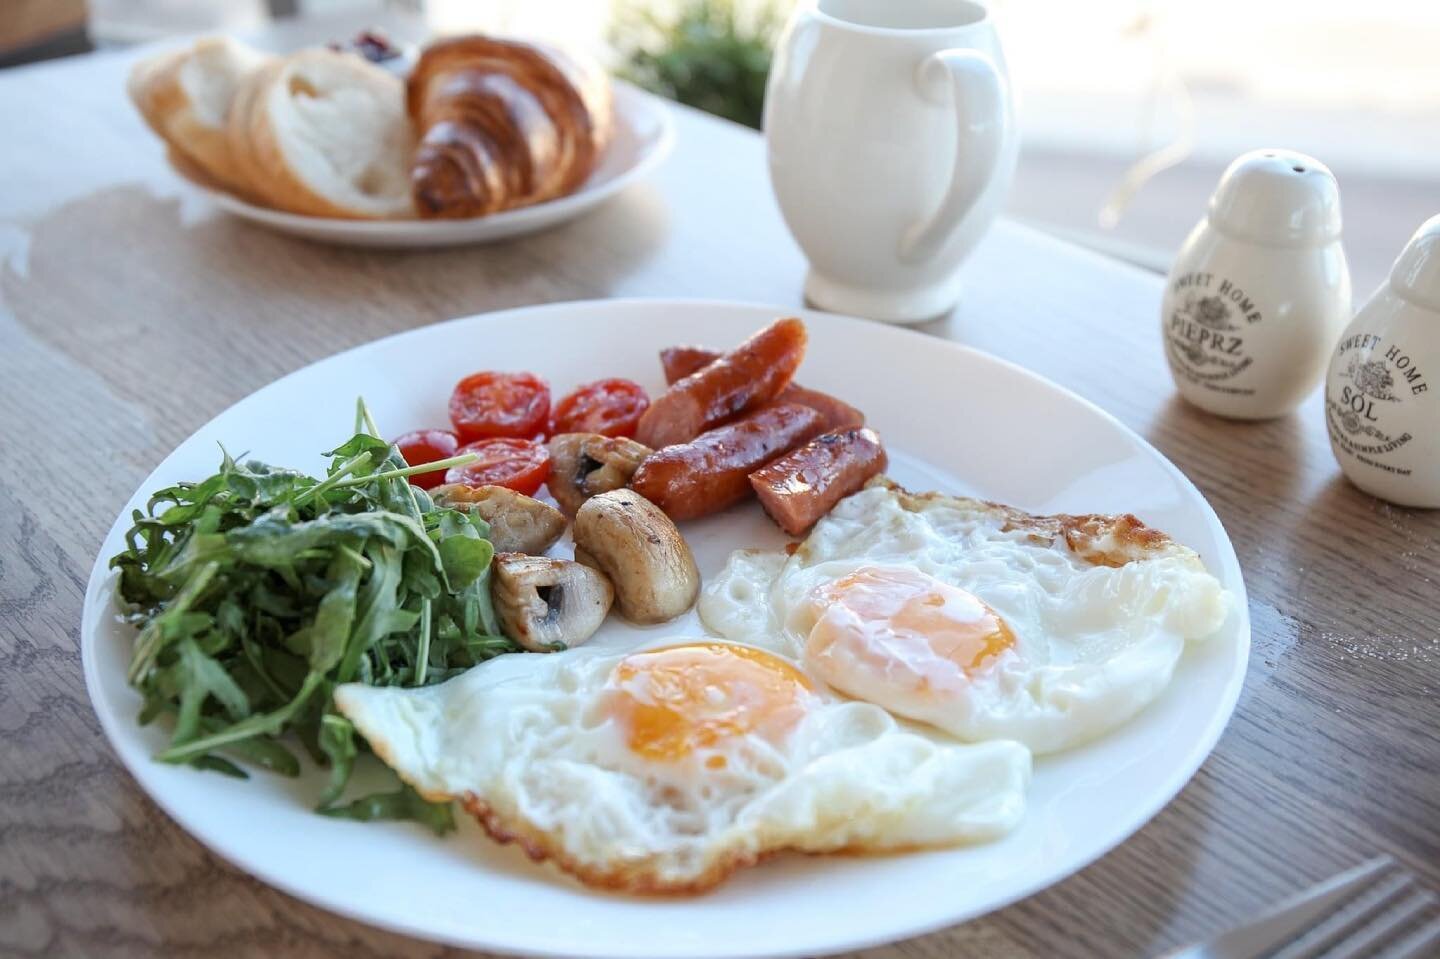 Na pierwsze niedzielne śniadanie zapraszamy od 10:00 🍳🥓

www.kawiarniafabryka.com